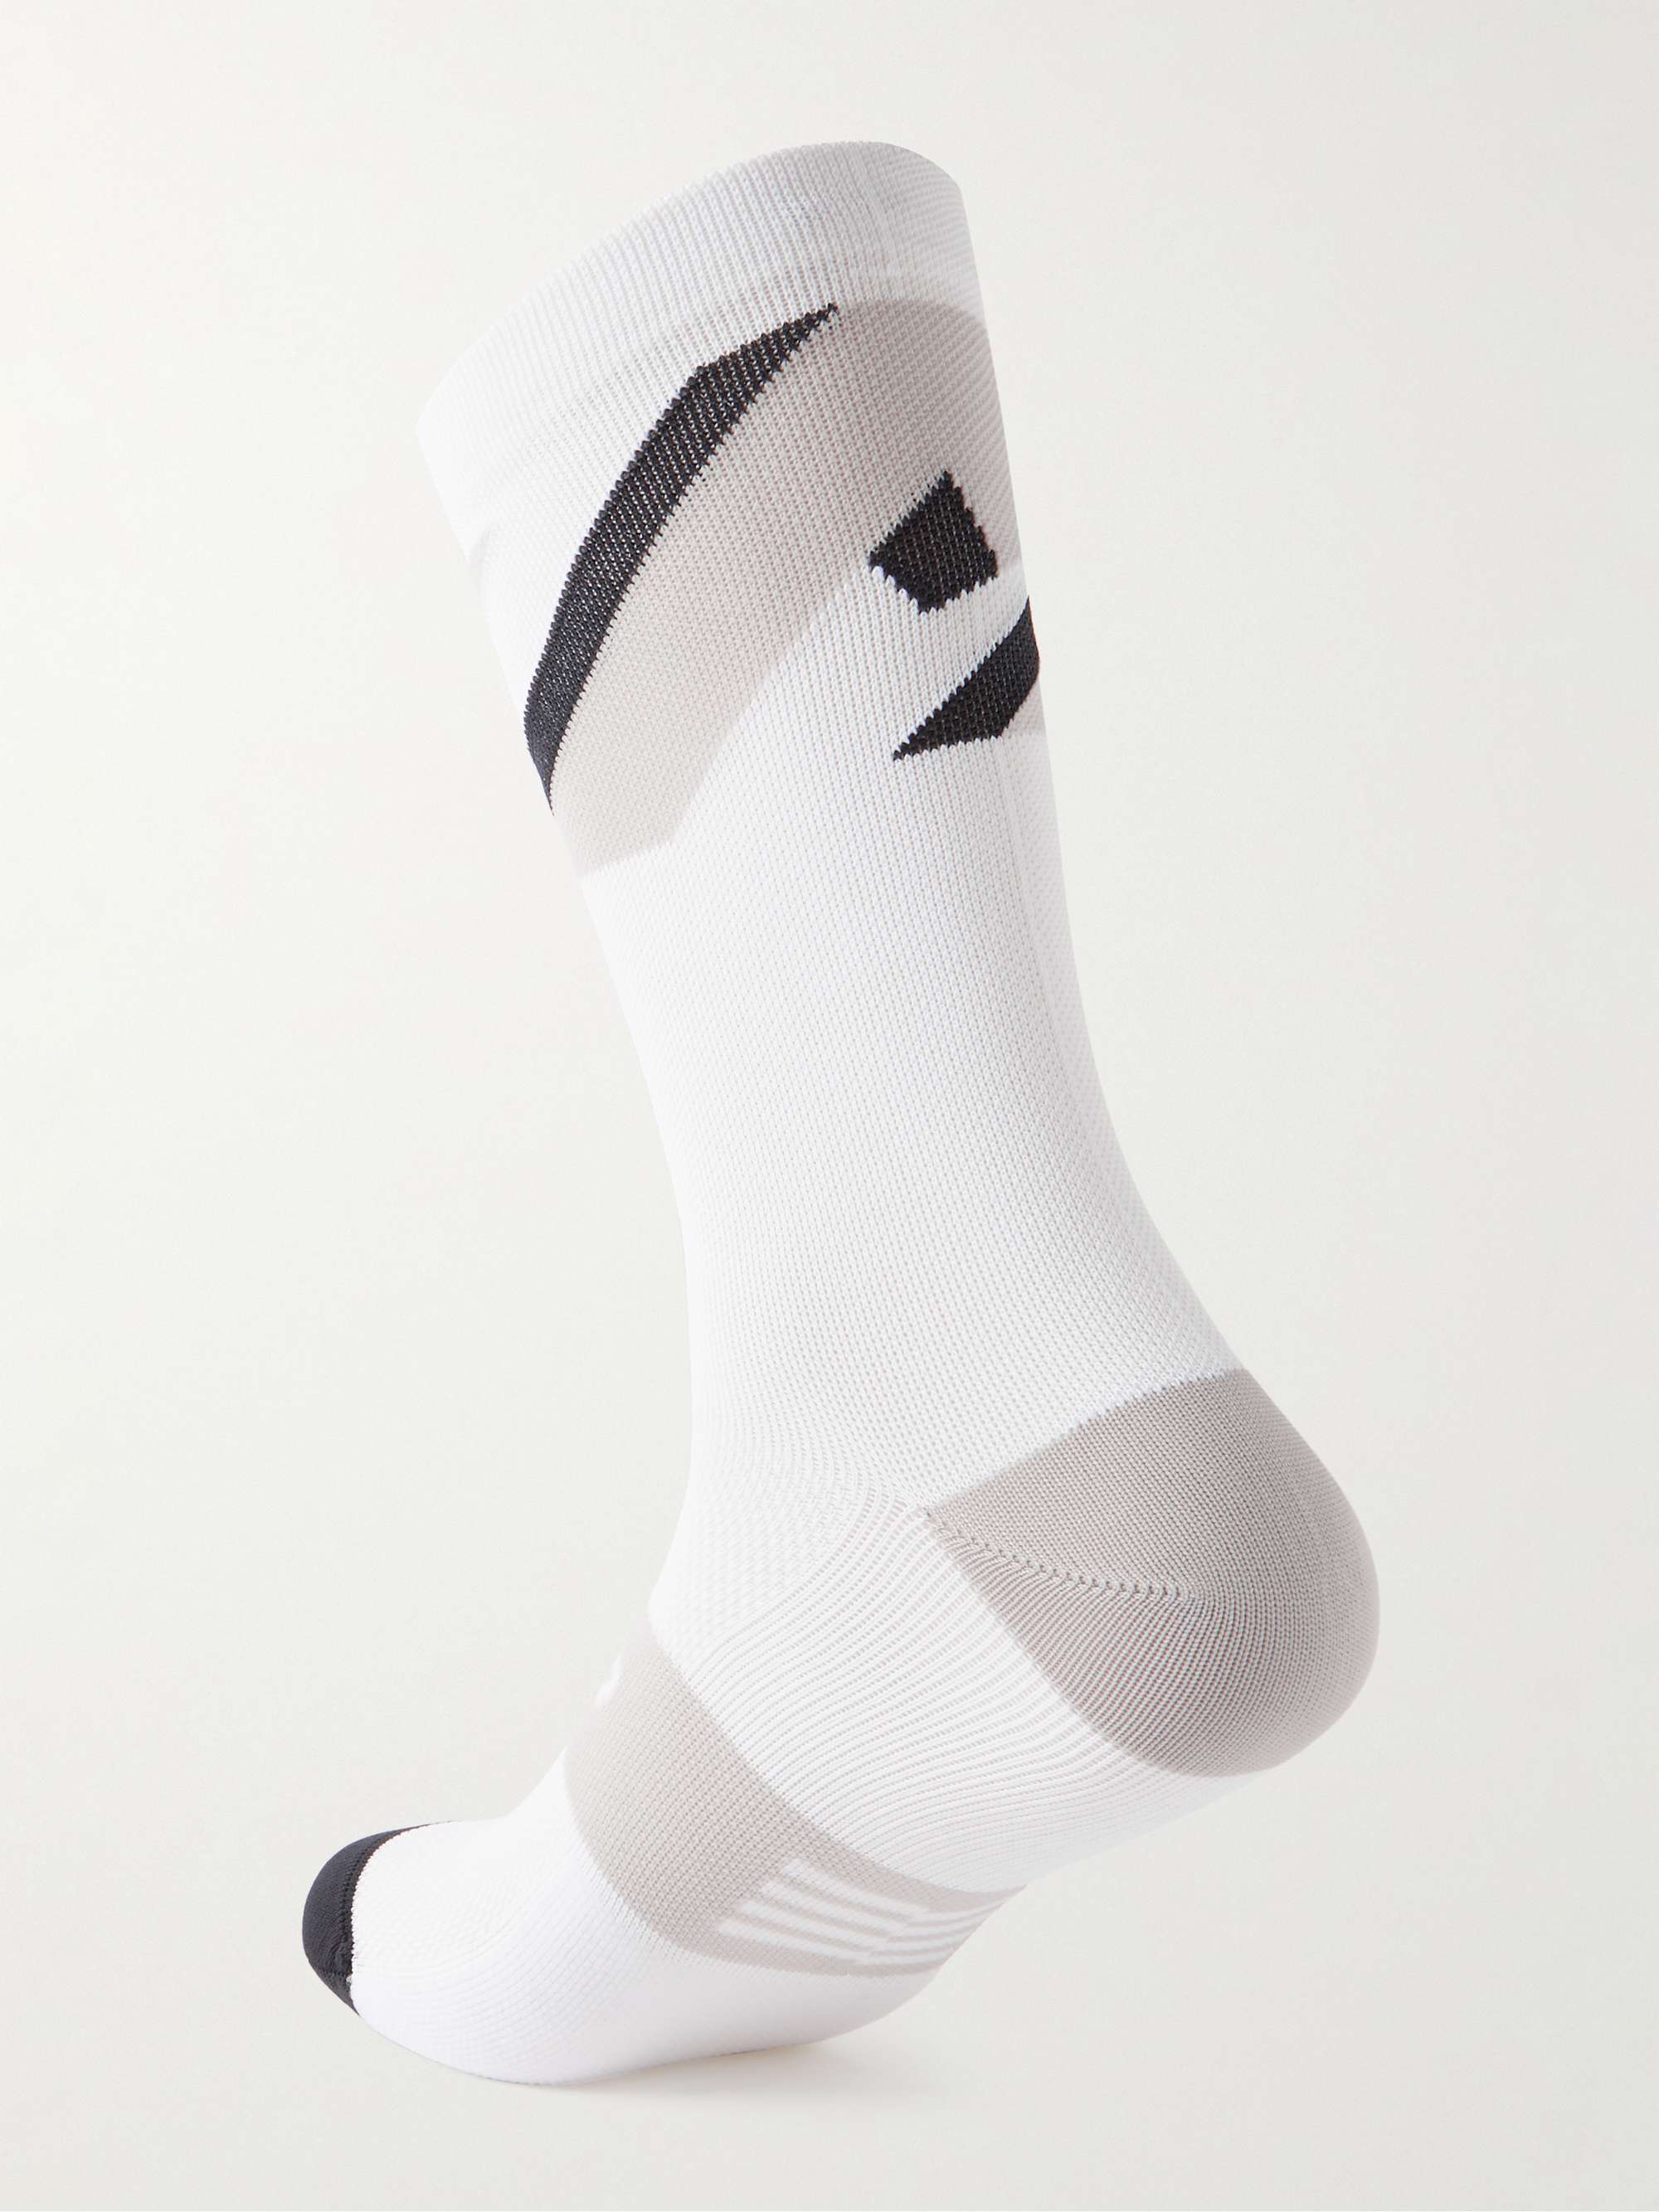 MAAP Evolve 3D Stretch-Knit Socks